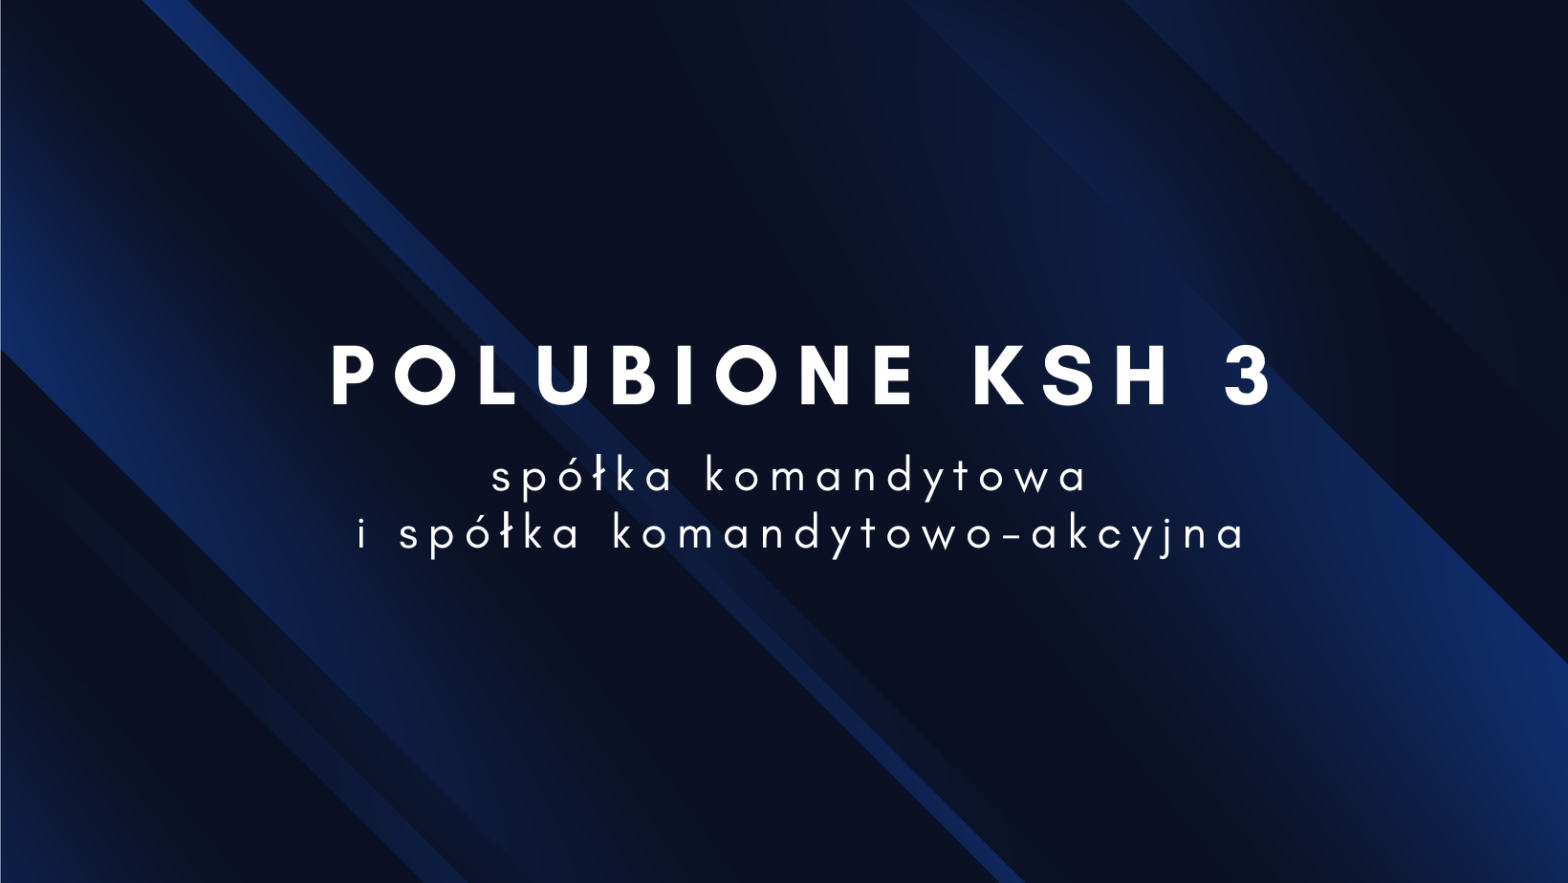 POLUBIONE KSH3 - umowa spółki komandytowej oraz statut spółki komandytowo-akcyjnej